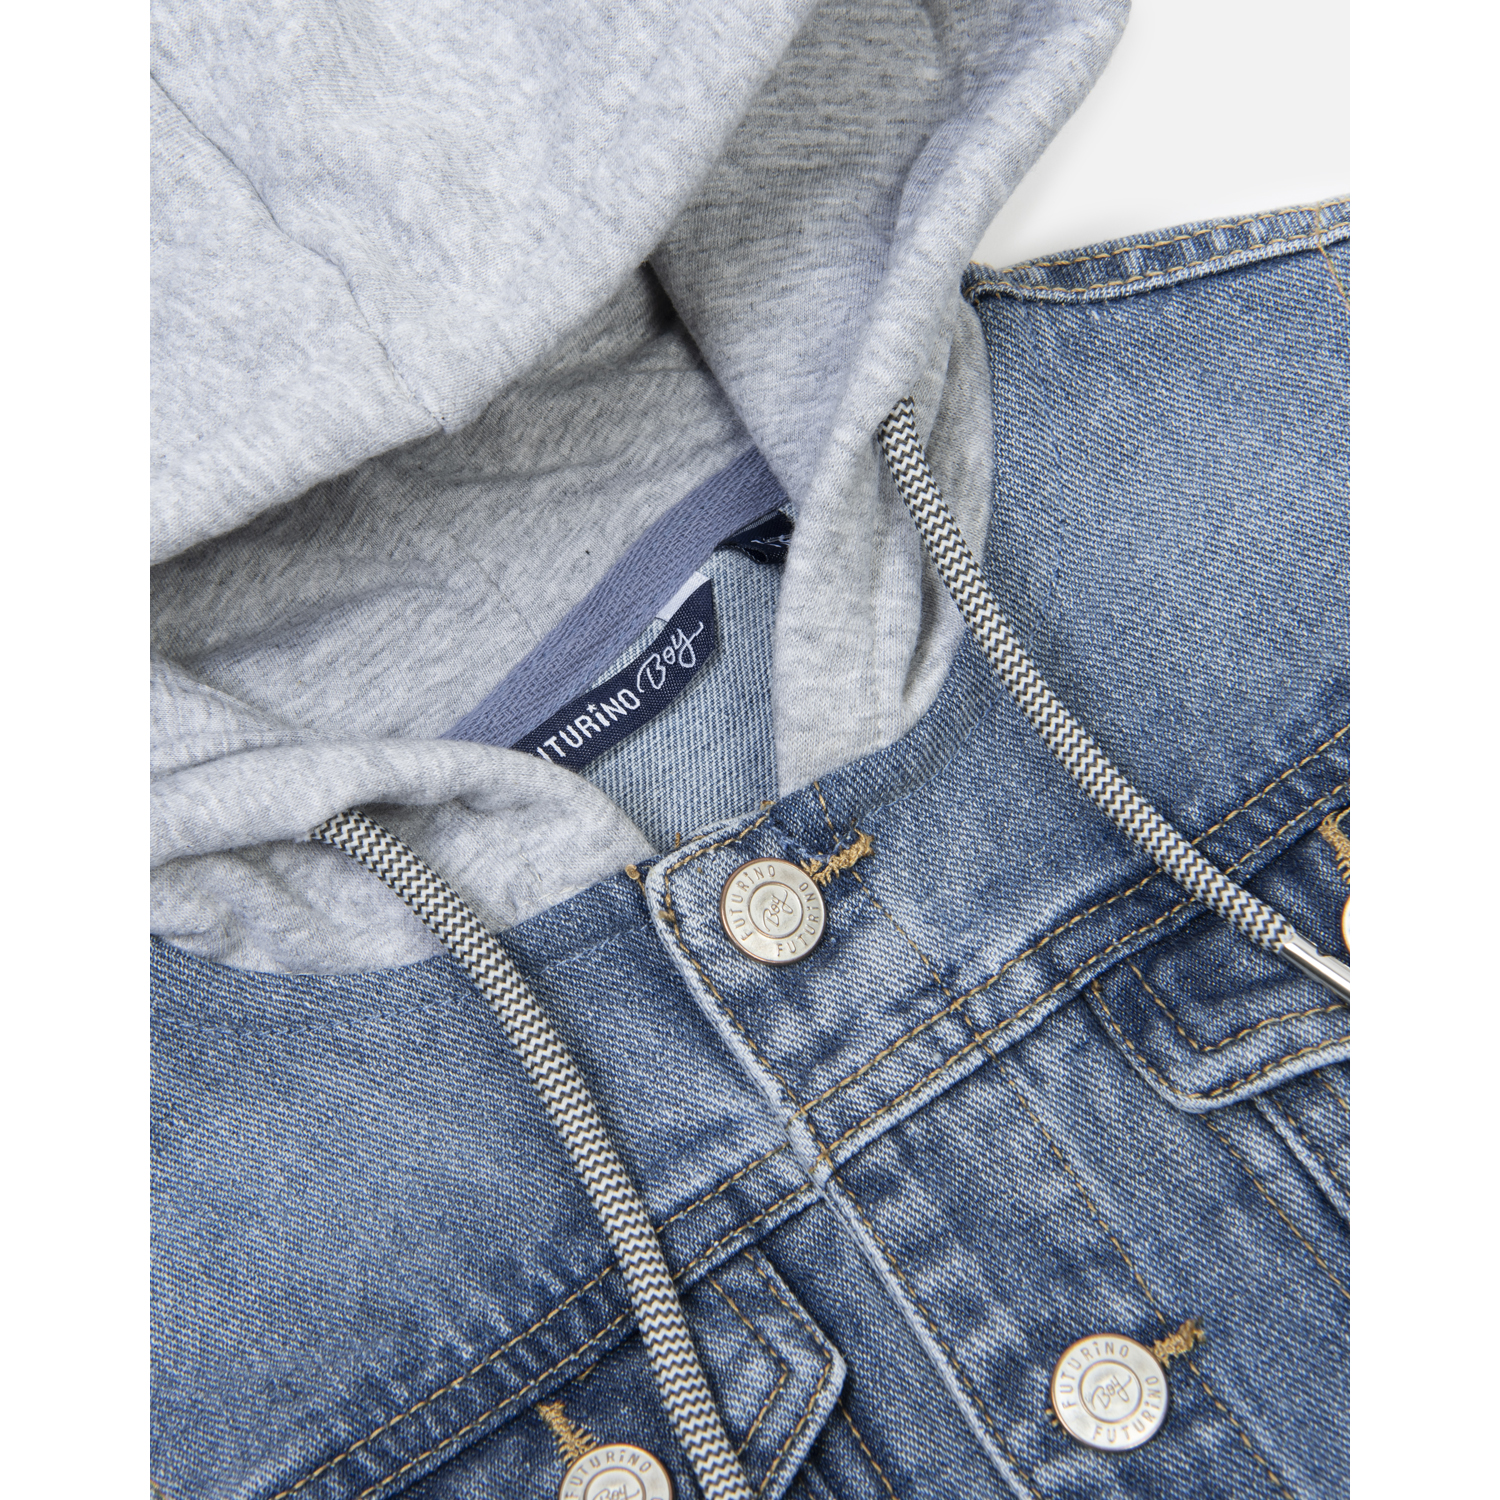 Куртка джинсовая Futurino S22FU5-B117-1tb-66 - фото 4